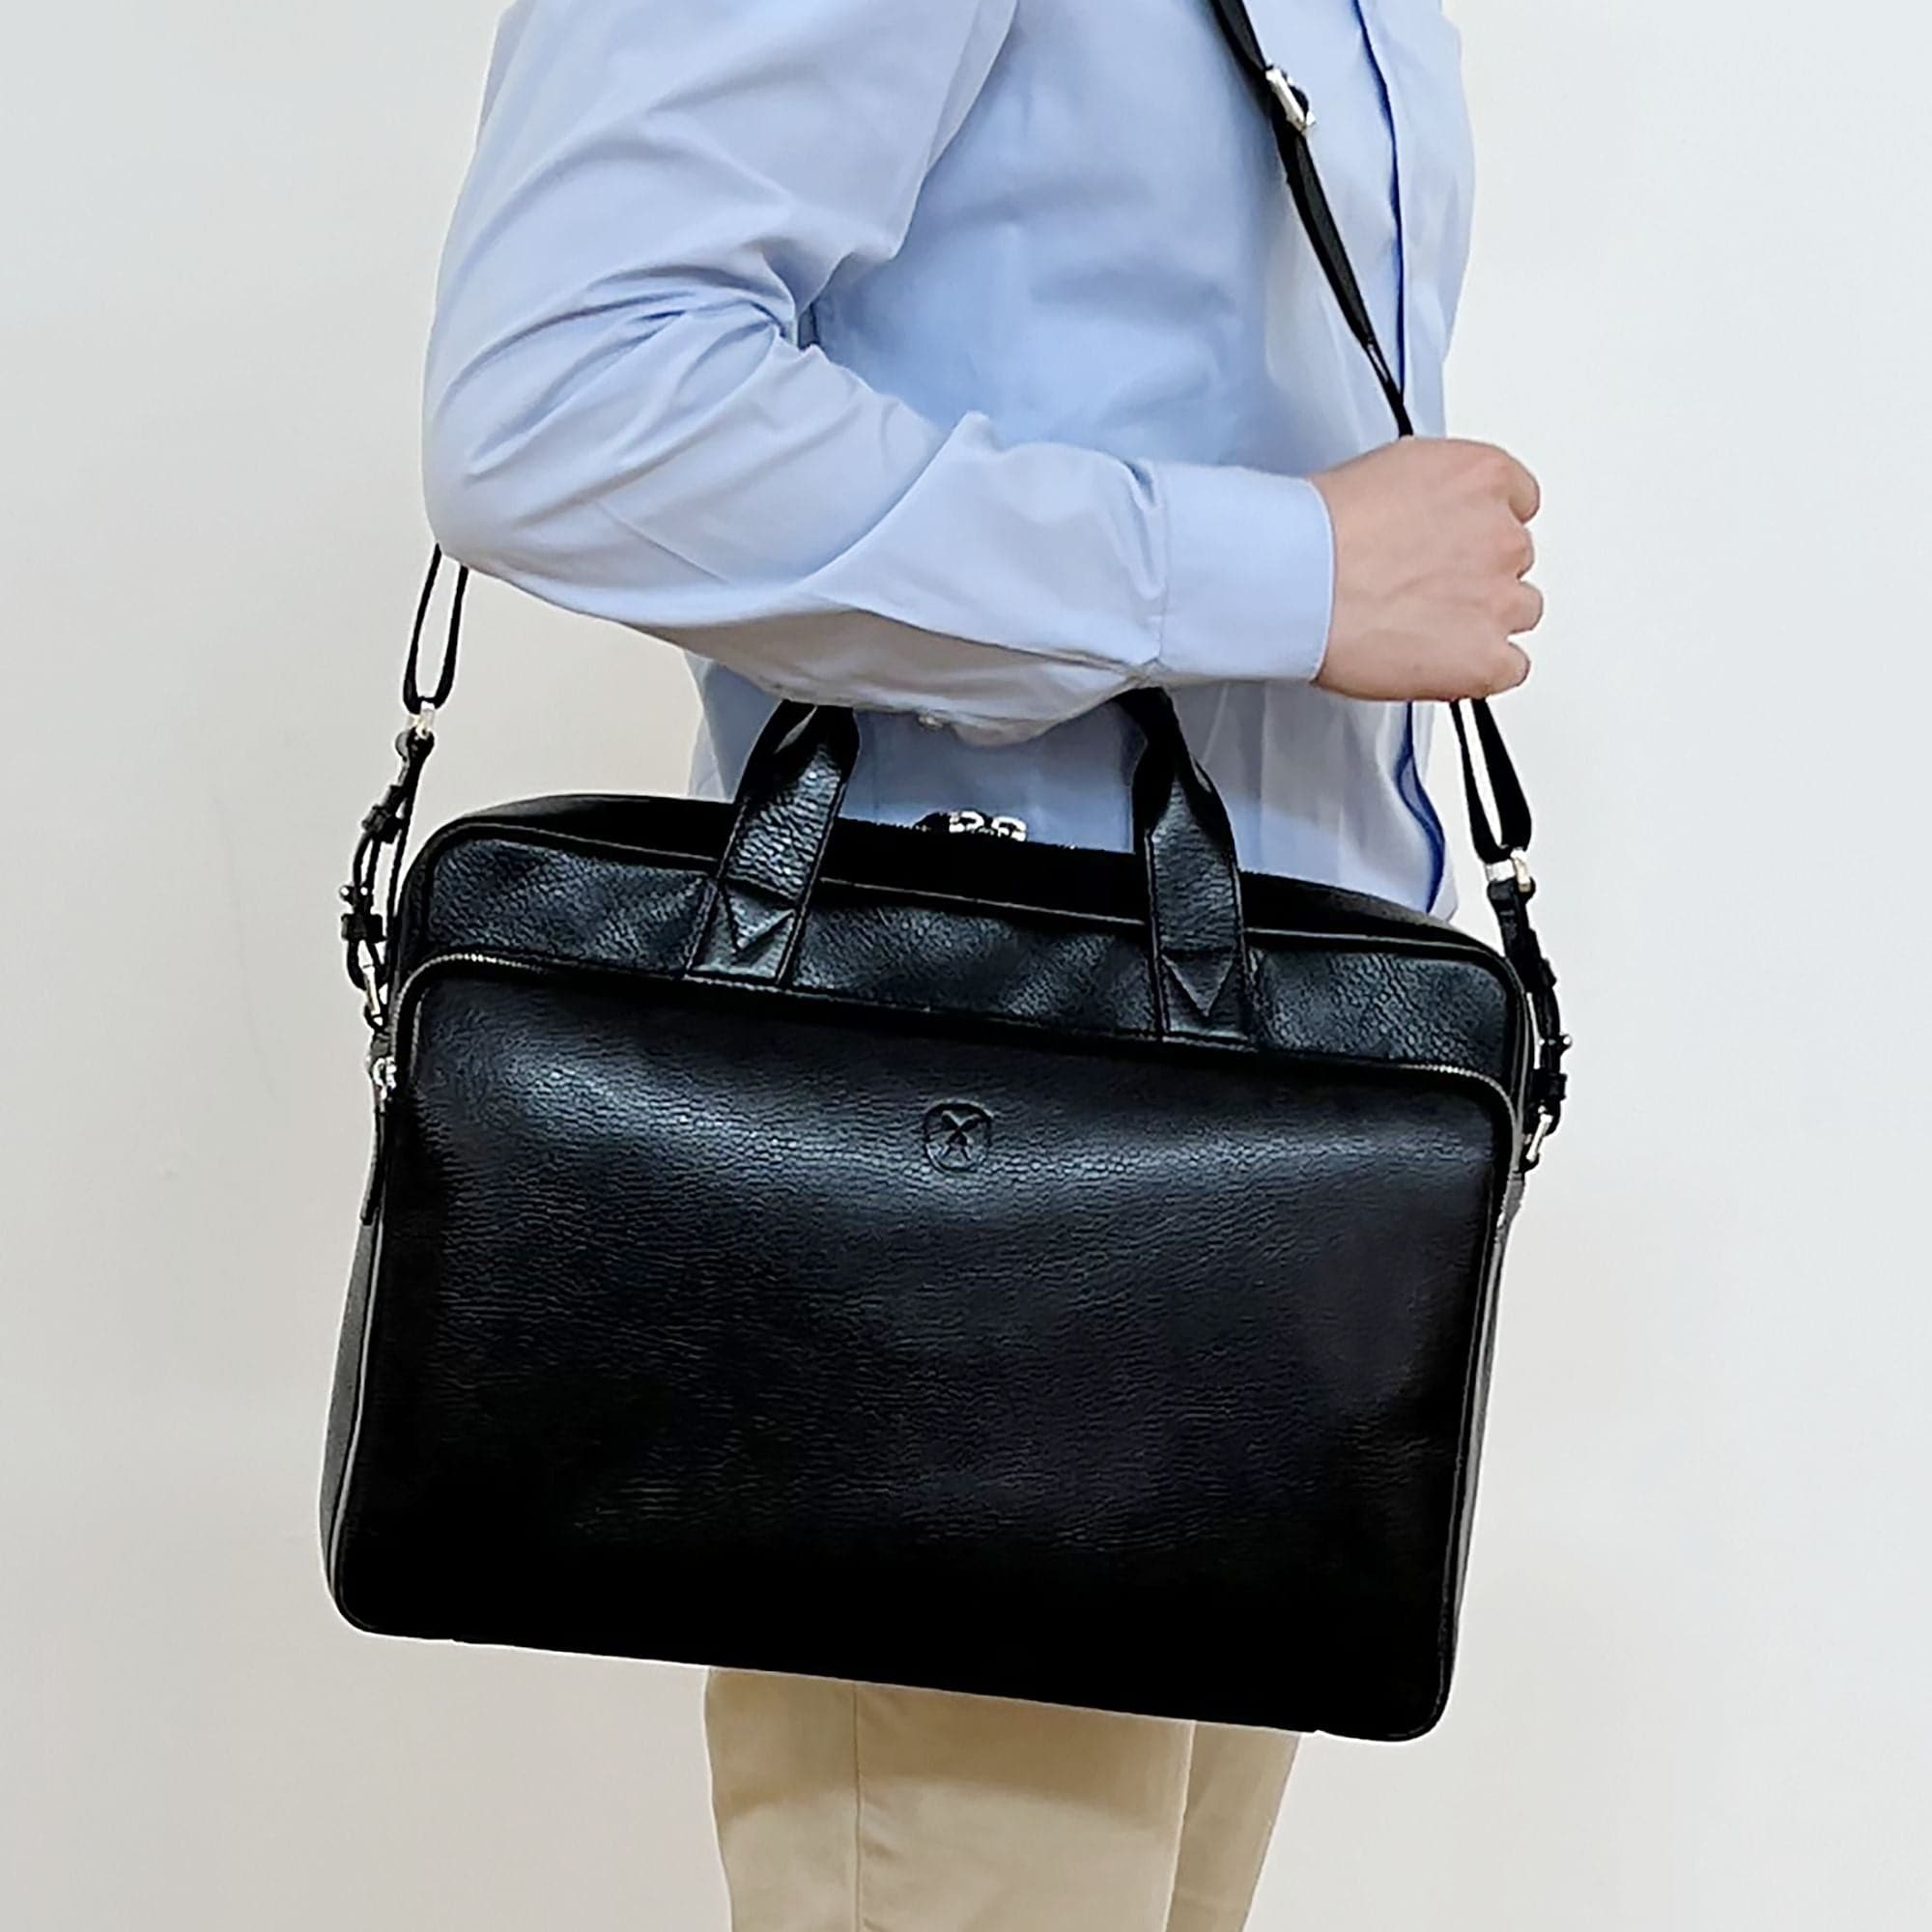 Businesstasche Laptoptasche 15 Zoll leicht genarbtes Leder schwarz